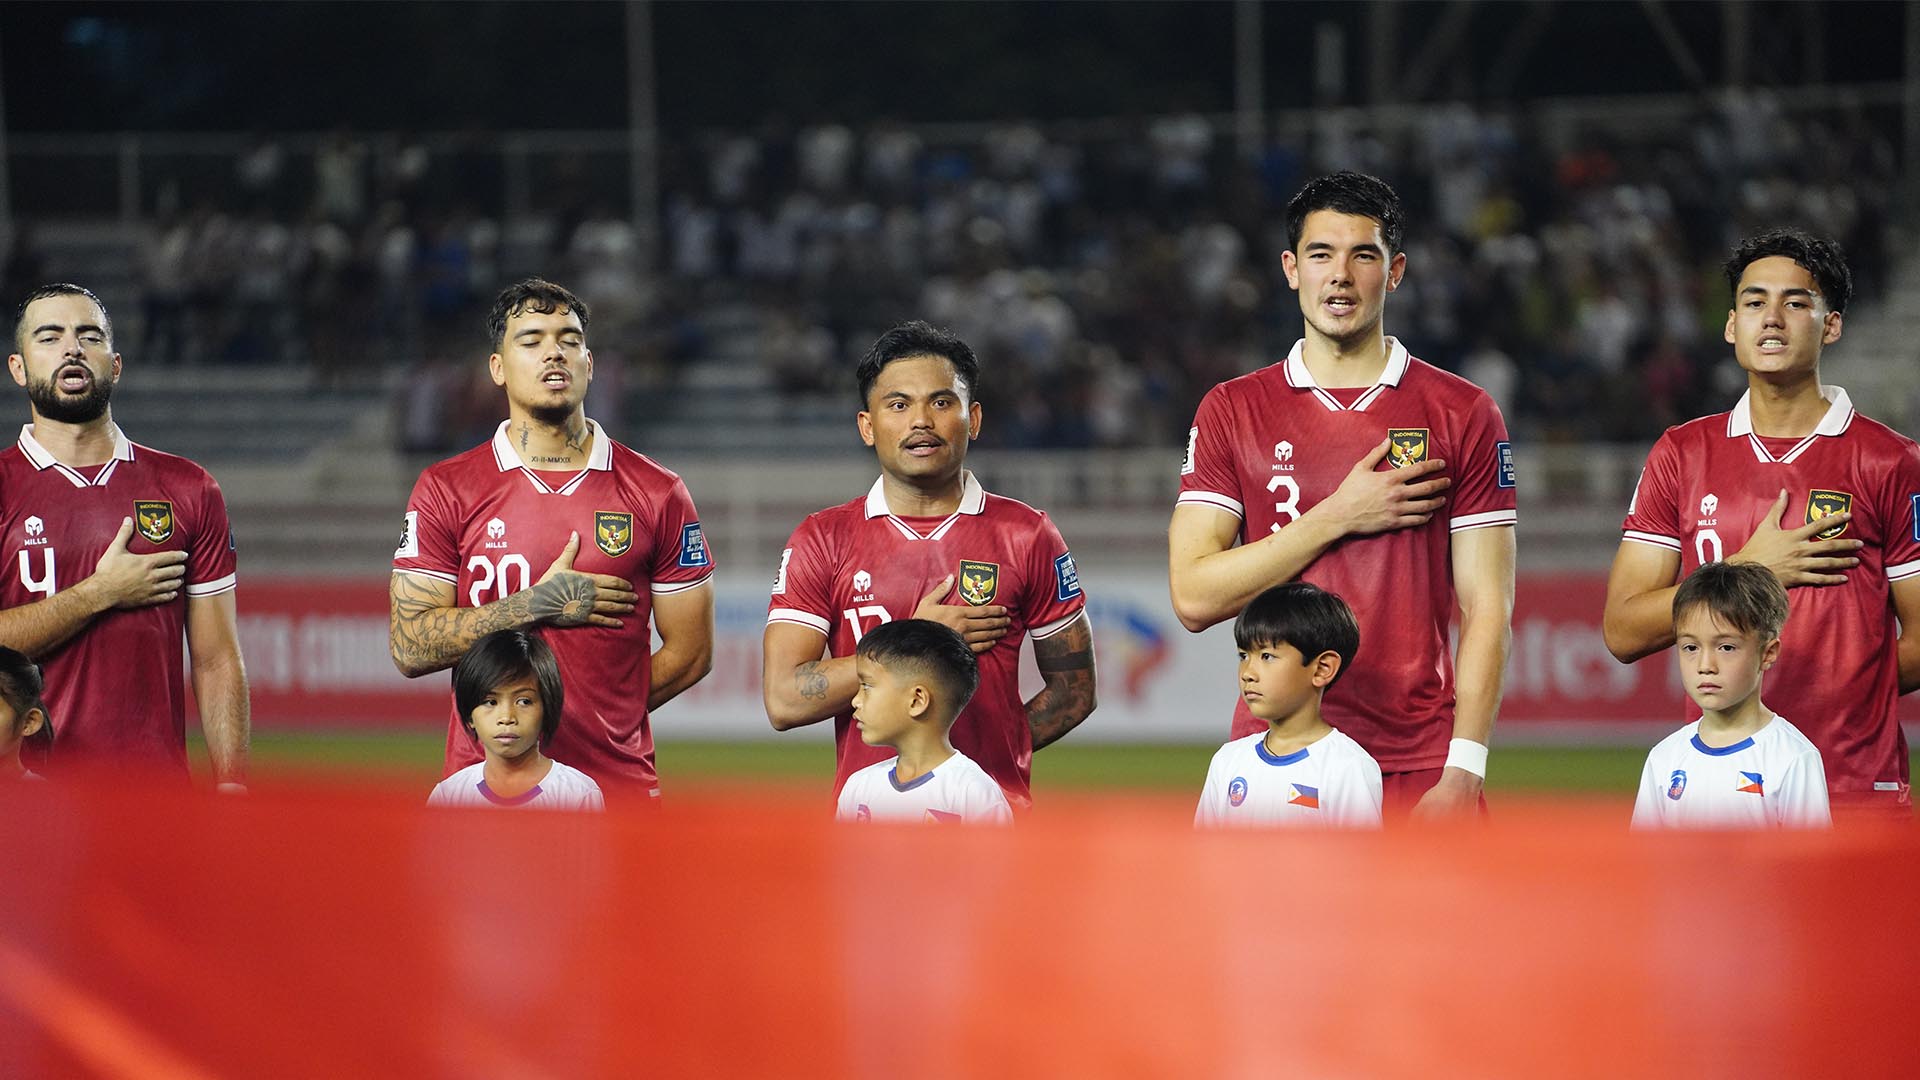 Pemain Keturunan Top Ingin Bela Timnas Indonesia, Main Di Salah Satu Klub Terbaik Dunia